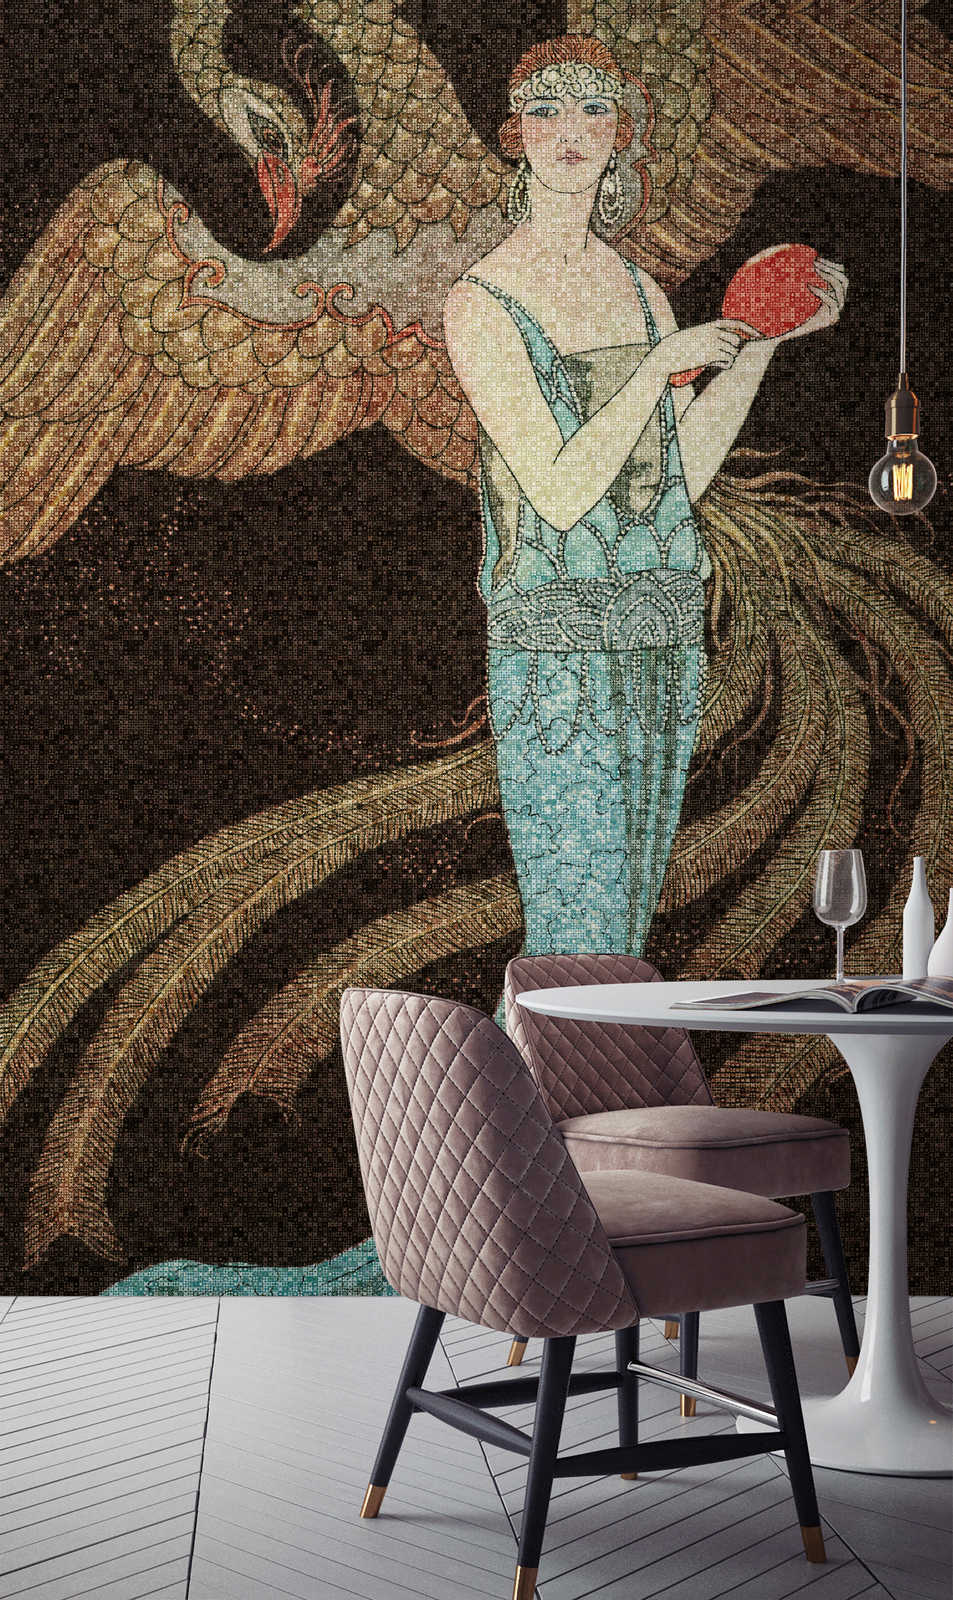             Scala 1 - Carta da parati Art Deco a mosaico con fenice e donna
        